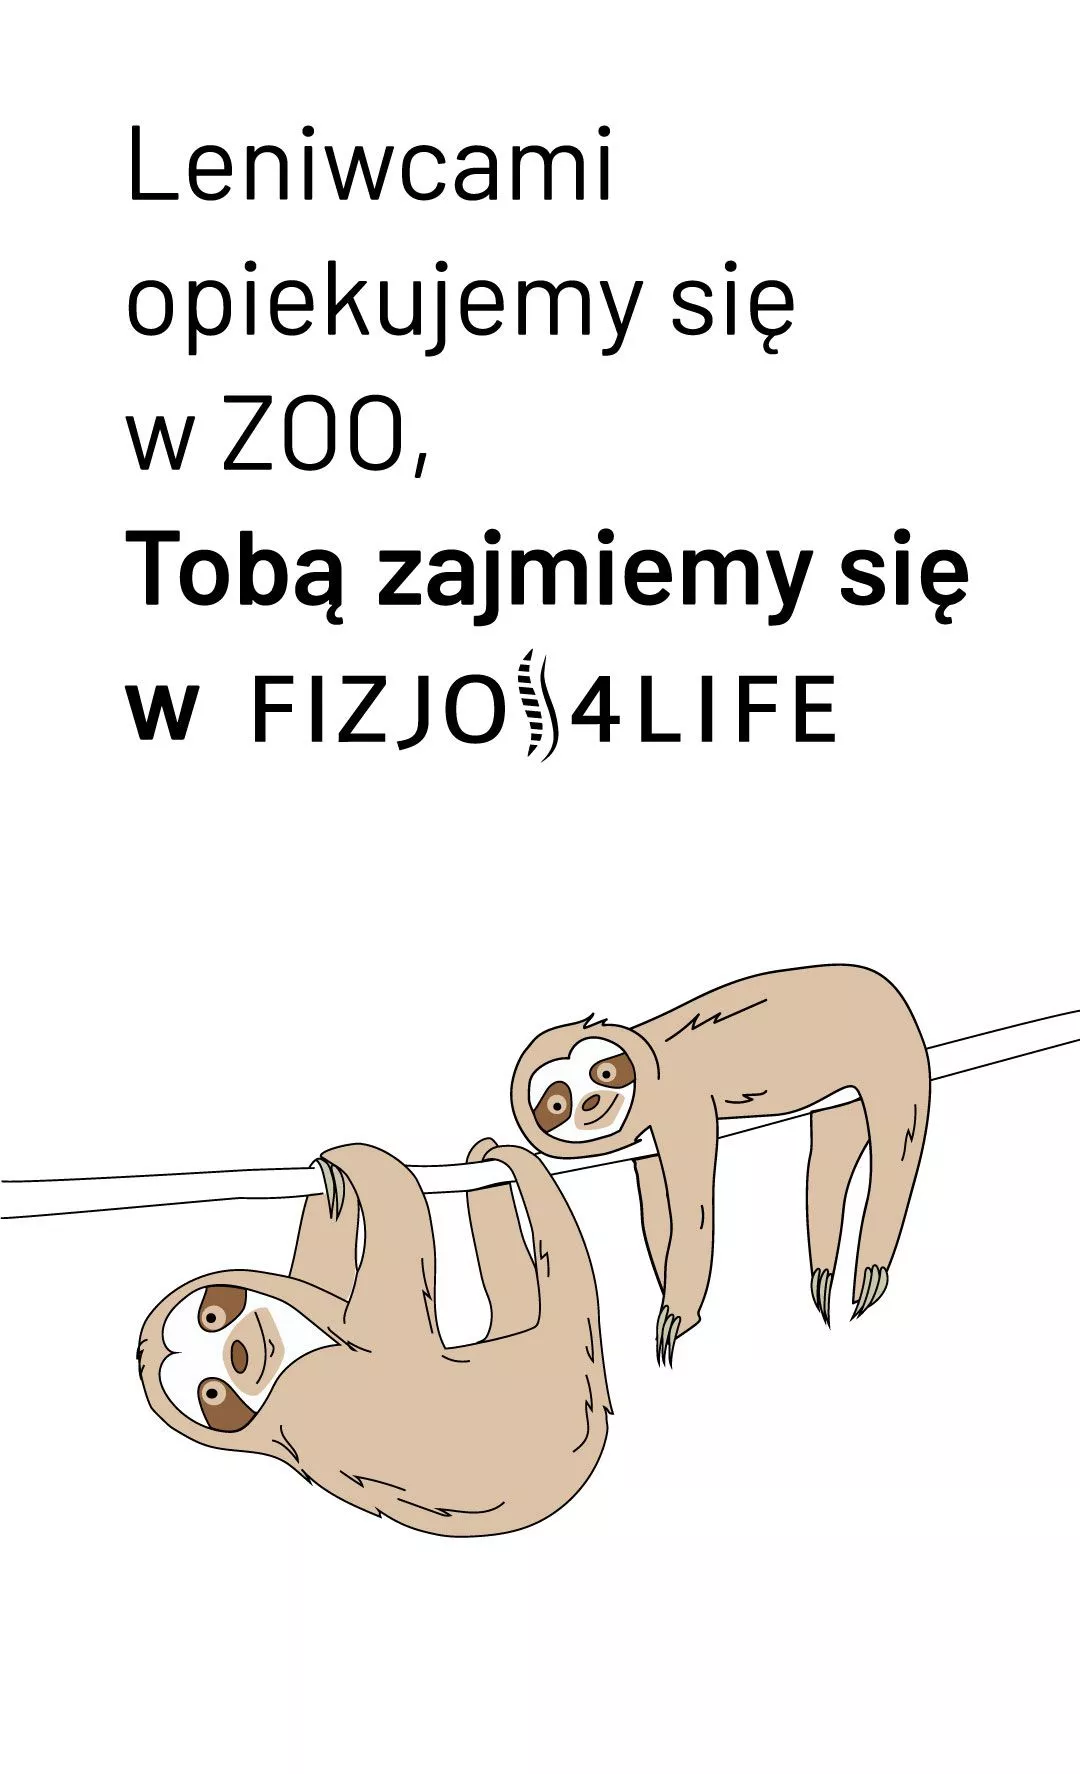 opiekujemy sie leniwcami z warszawskiego zoo